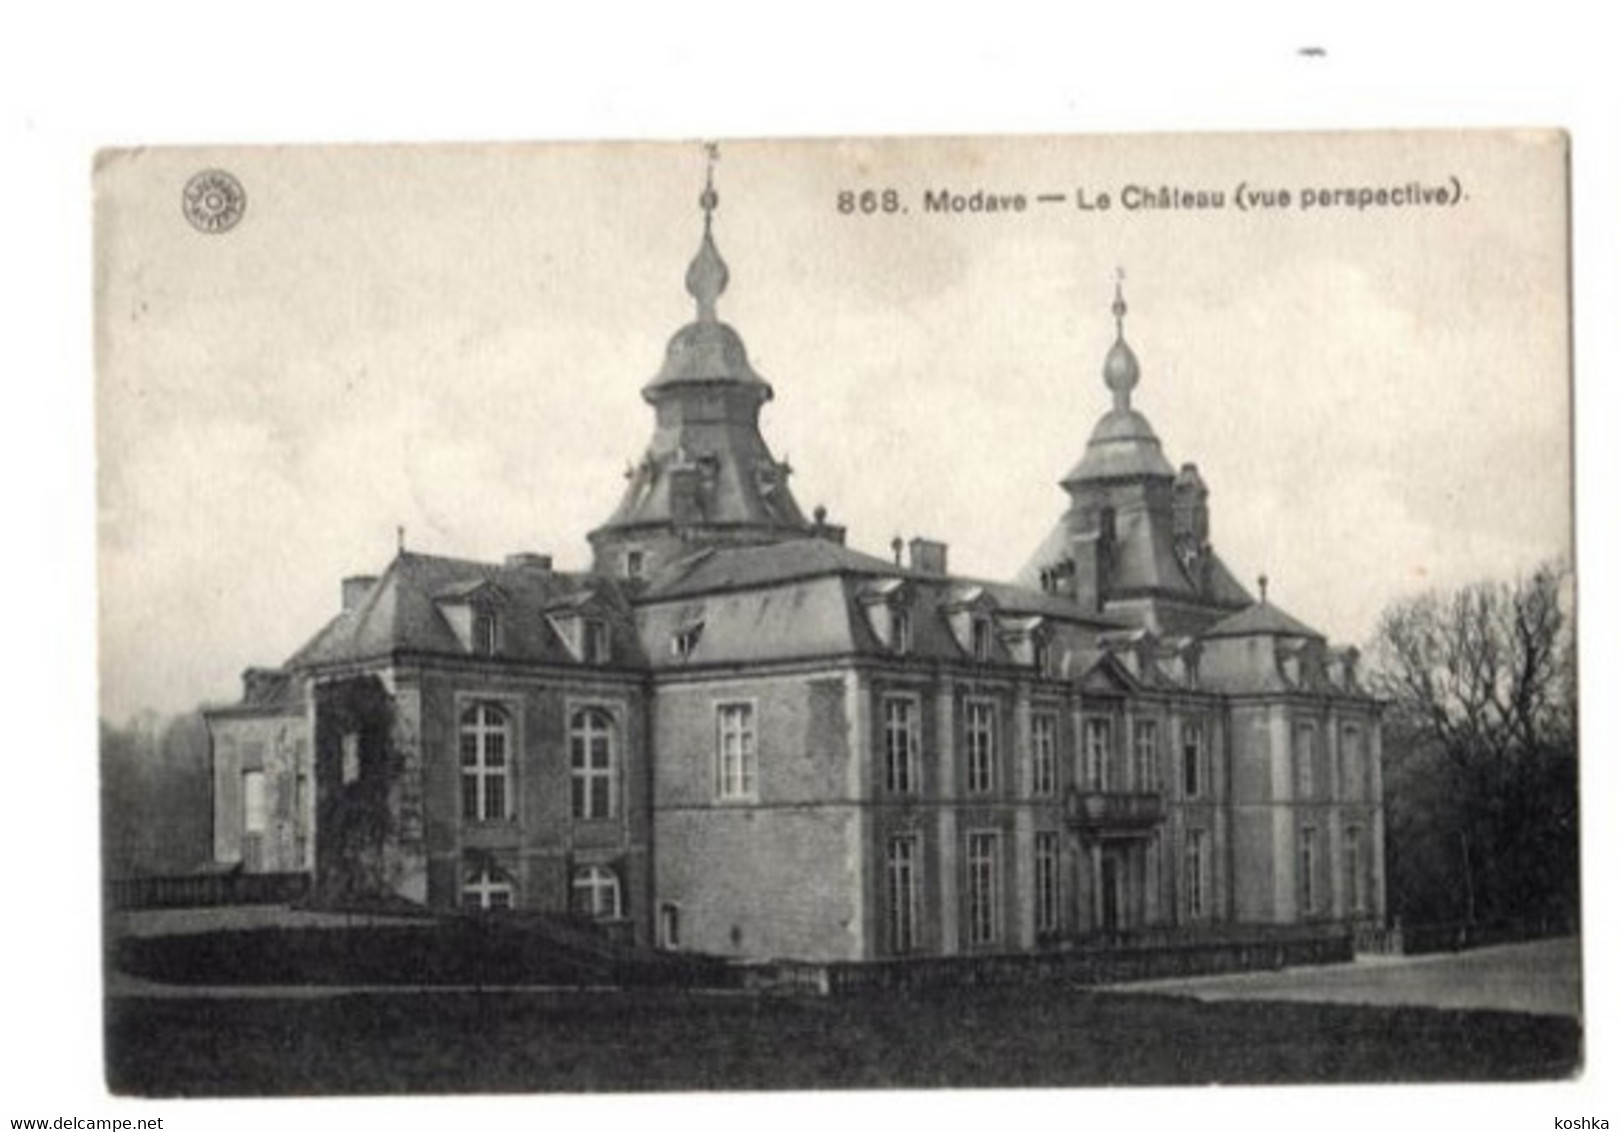 MODAVE - Le Château - Envoyée En 1911 - édition HERMANS No 868 - Modave